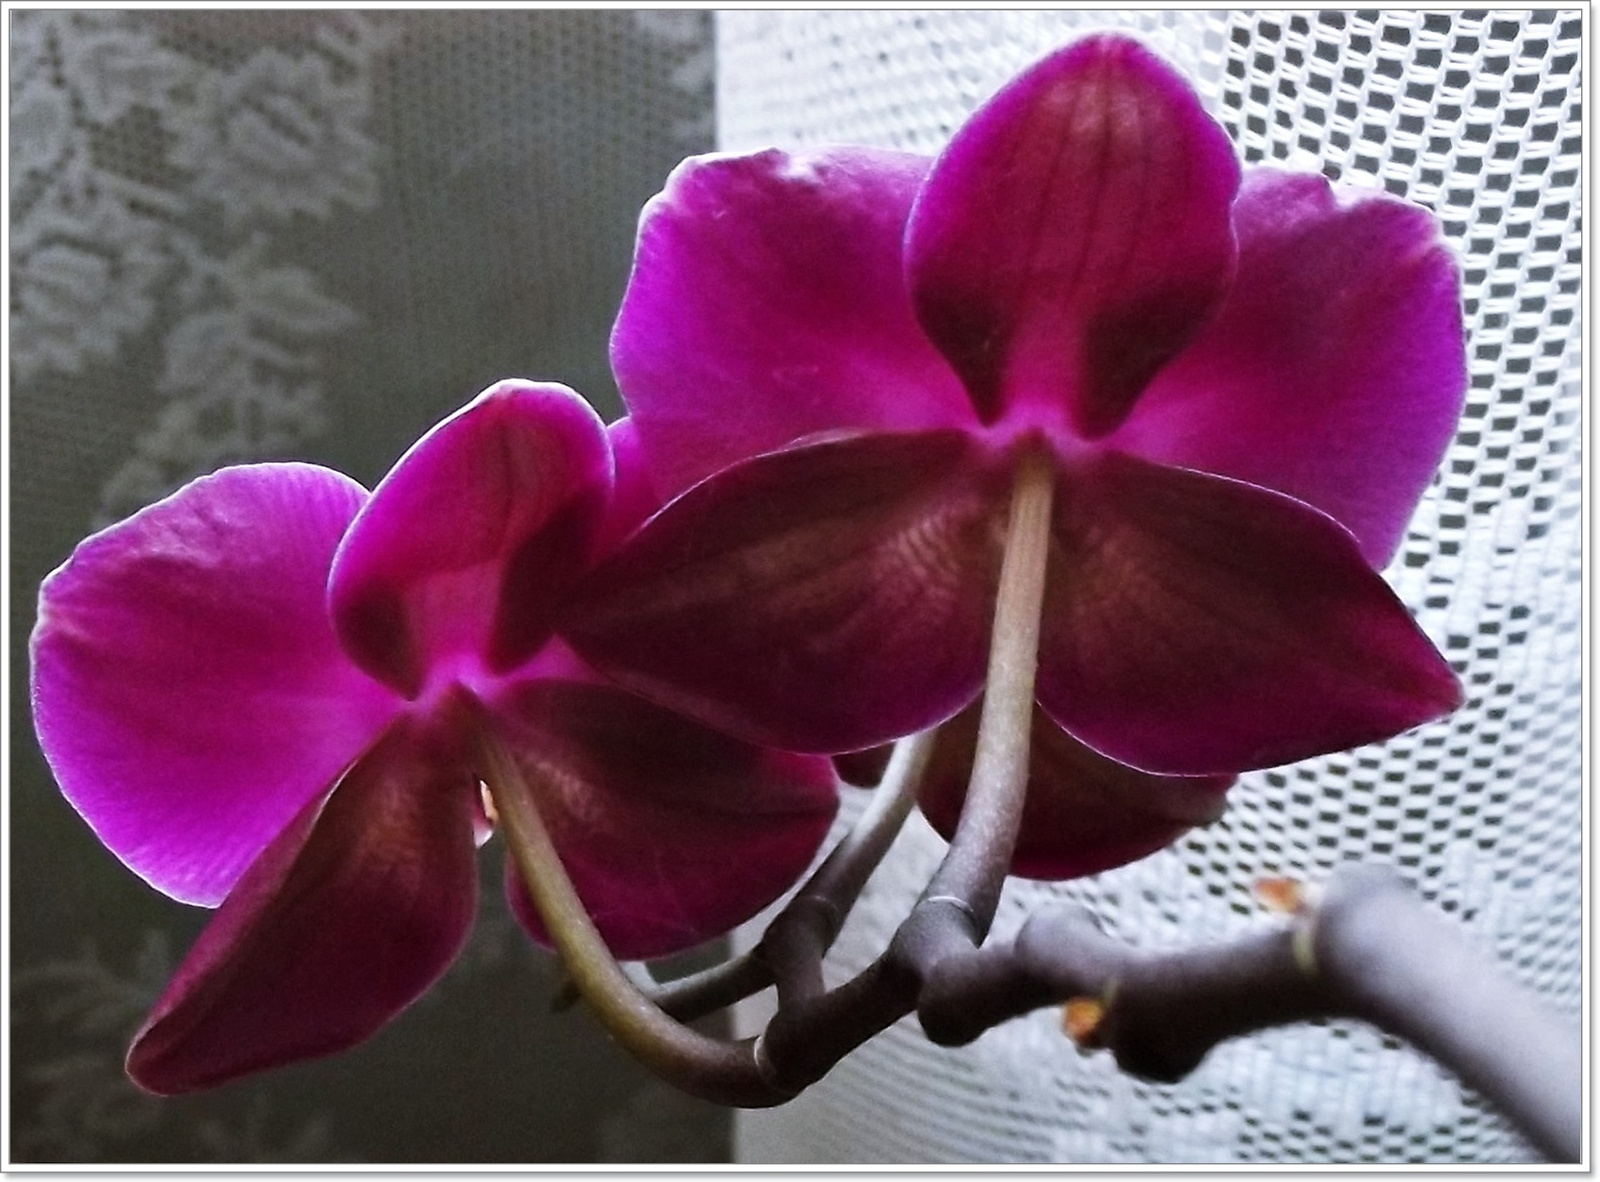 virágzik az orchideám